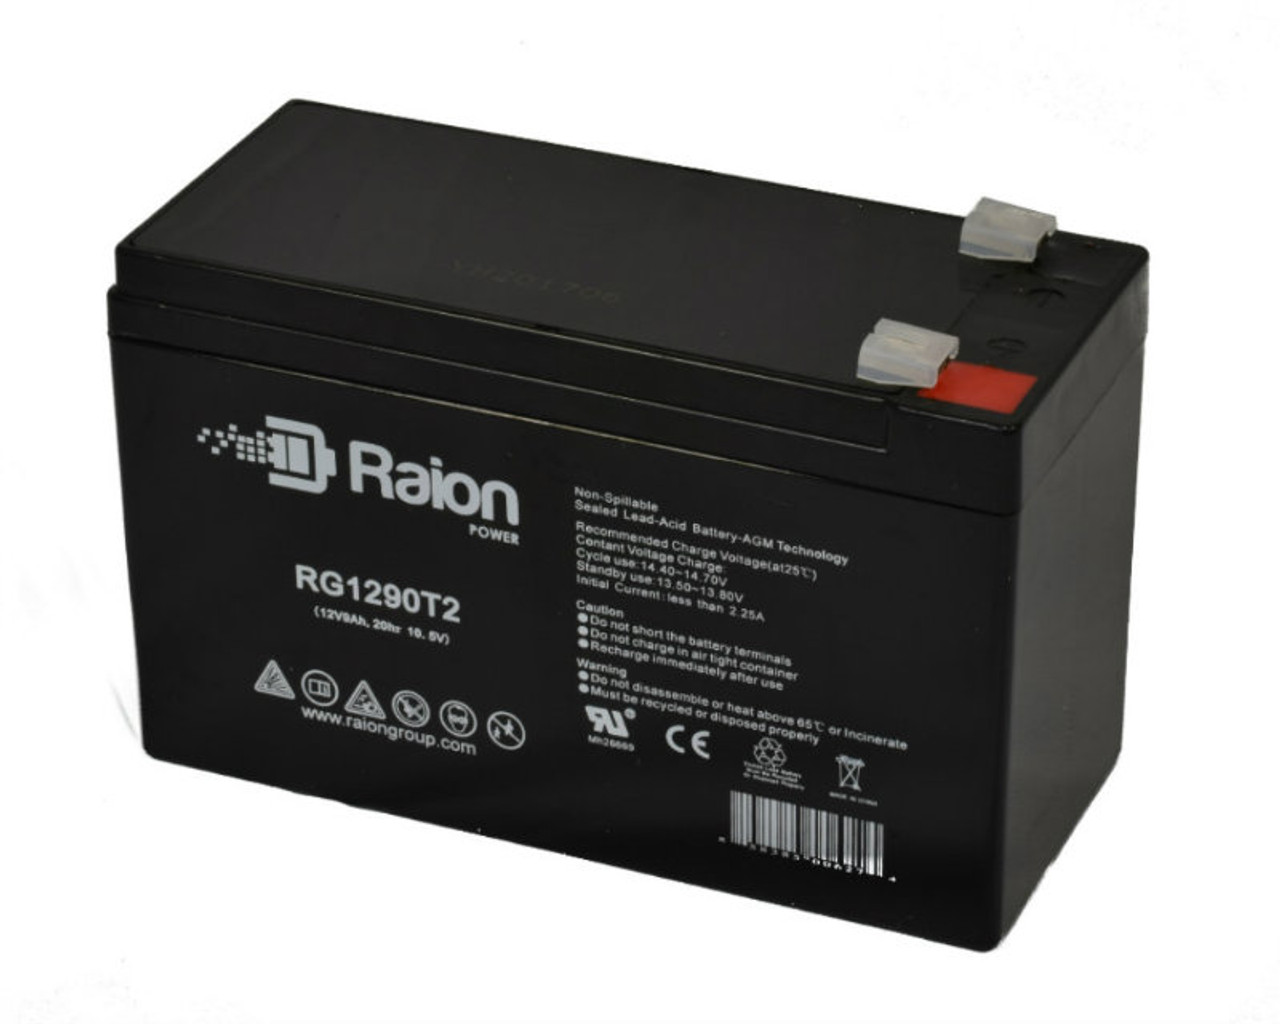 Raion Power RG1290T2 12V 9Ah AGM Battery for TLV1290F2